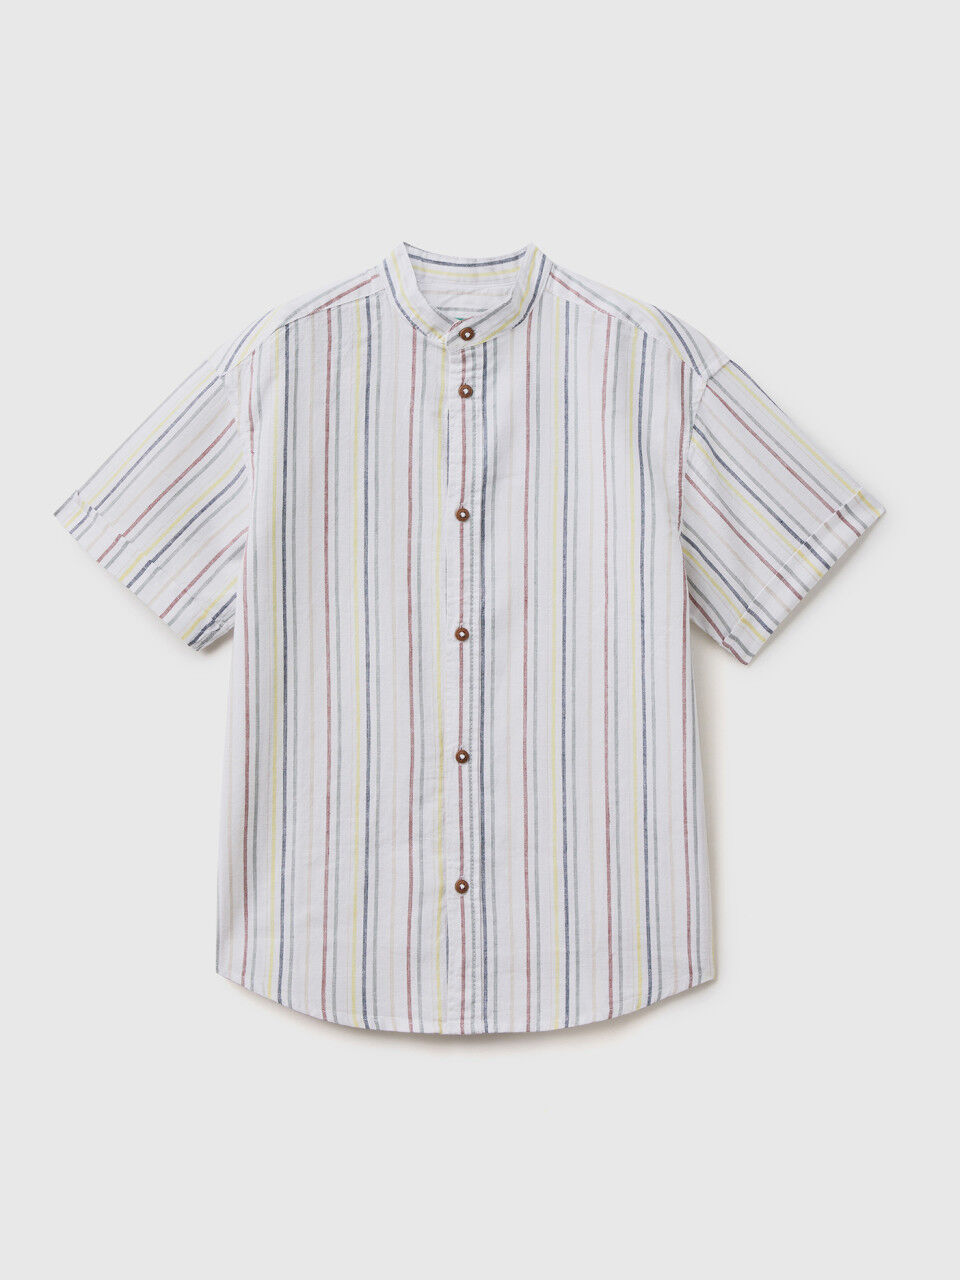 Striped shirt in linen blend